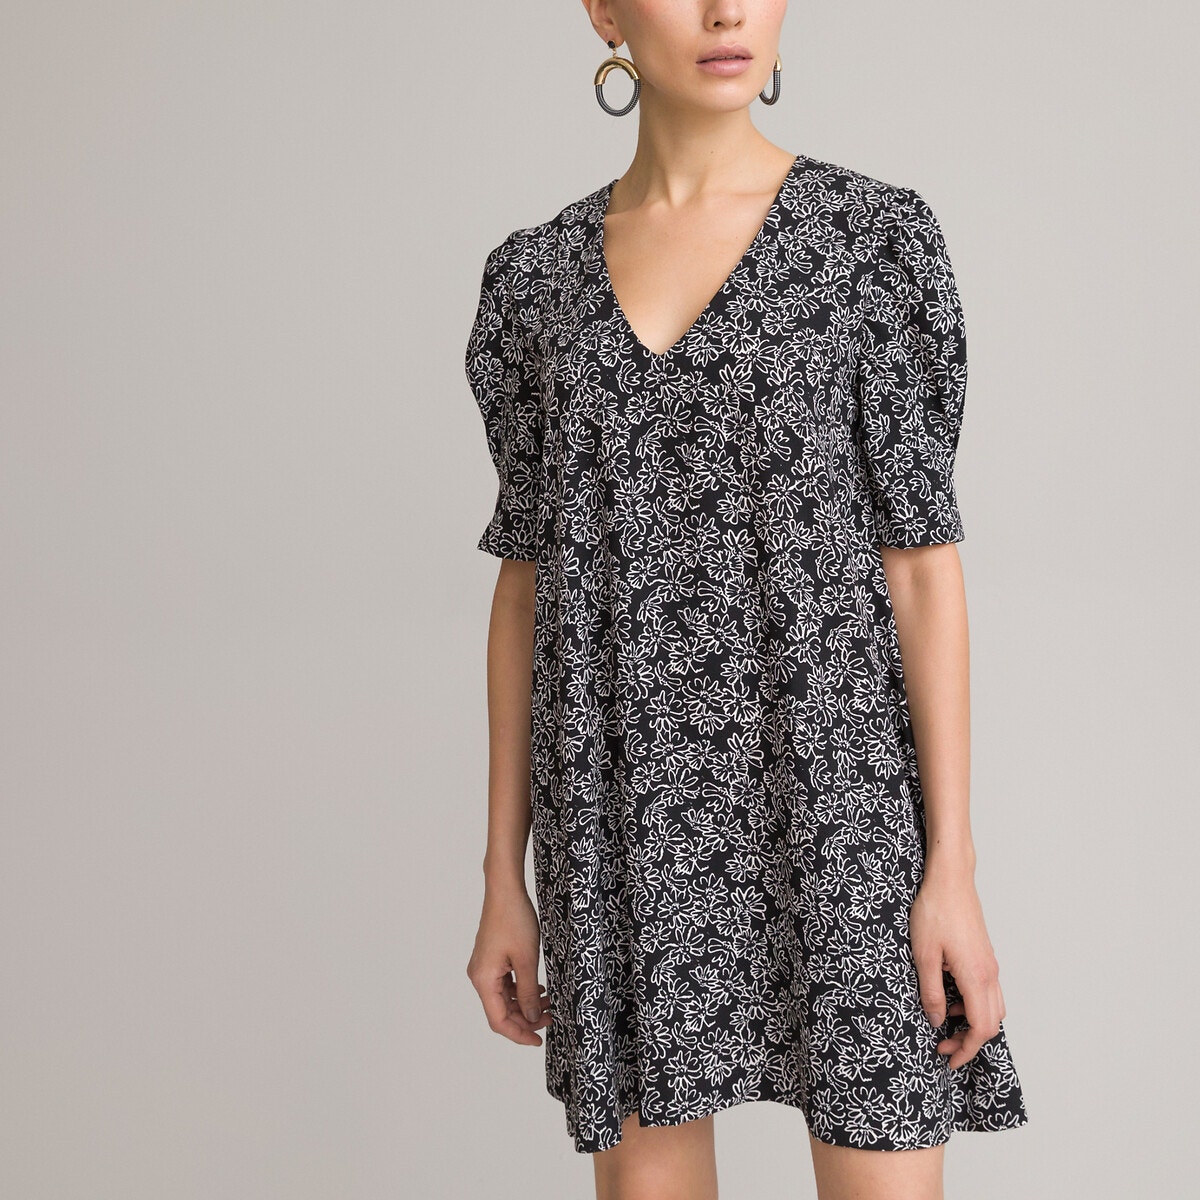 ΓΥΝΑΙΚΑ | Φορέματα | Κοντά μανίκια Κοντό φόρεμα με V και φλοράλ μοτίβο